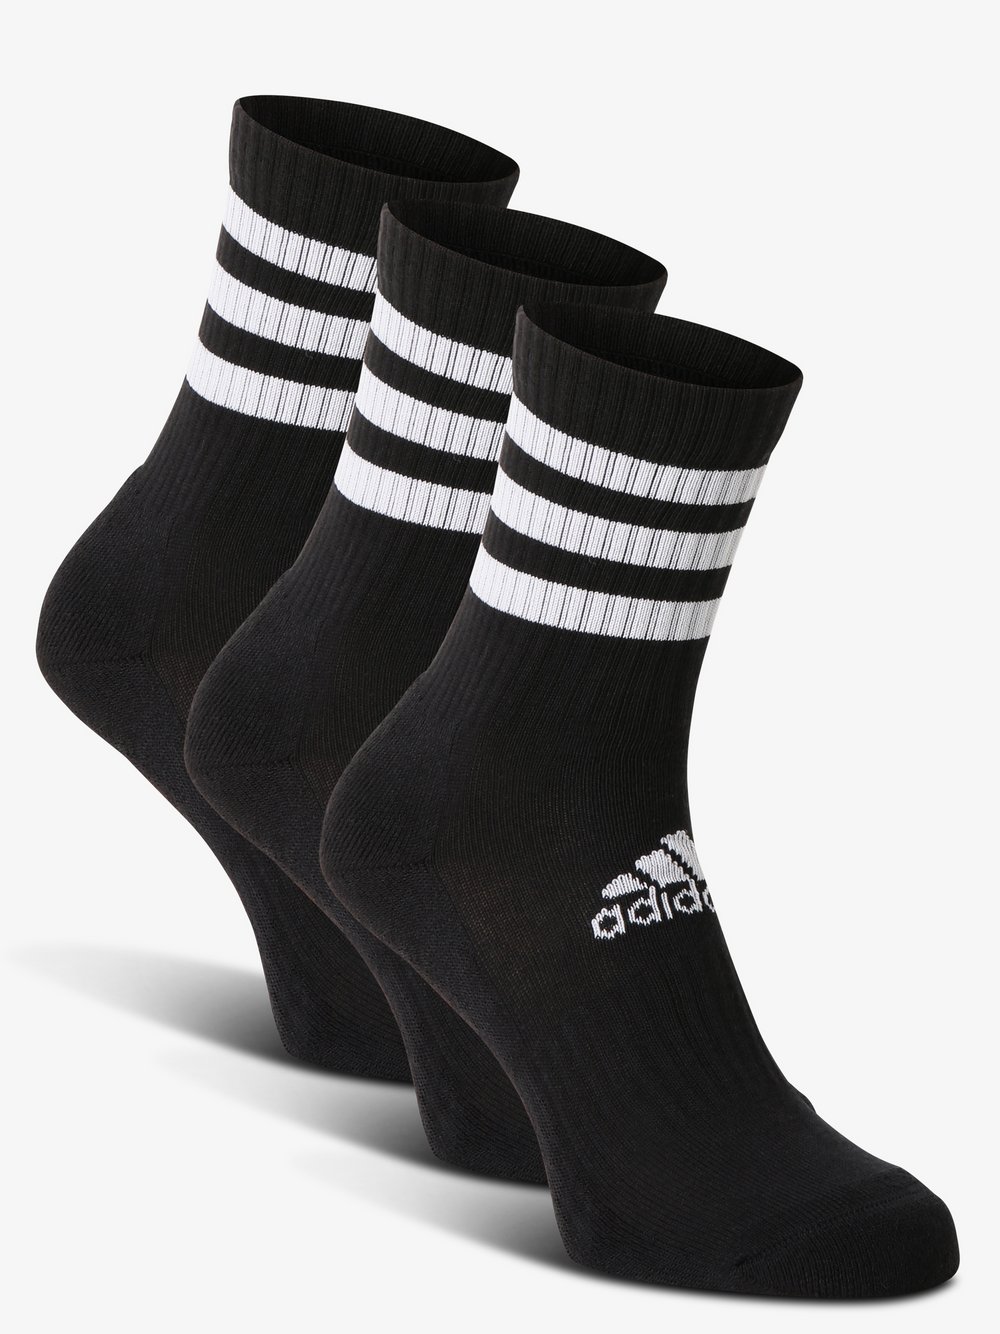 Adidas Originals - Skarpety z drobnej dzianiny pakowane po 3 szt., czarny